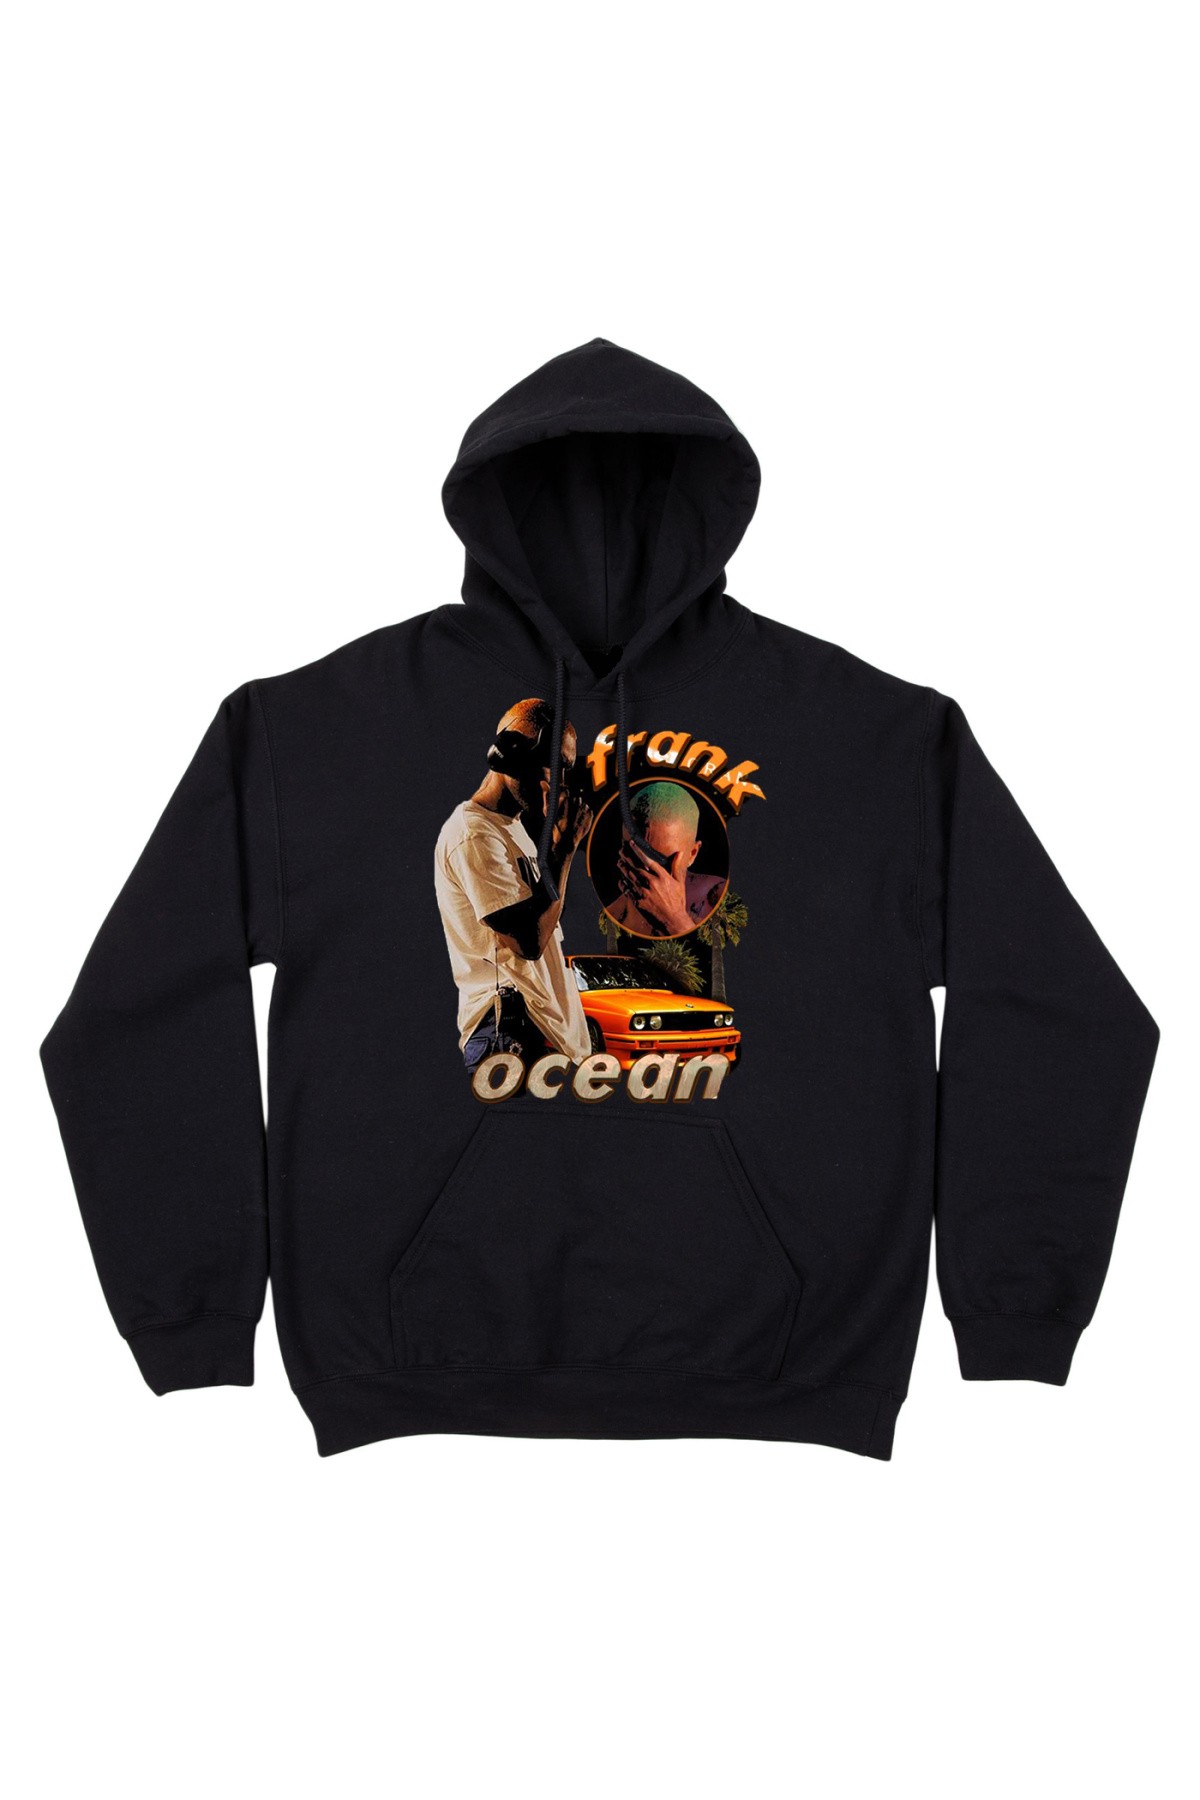 Frank Ocean Rap Hoodie Sweatshirt